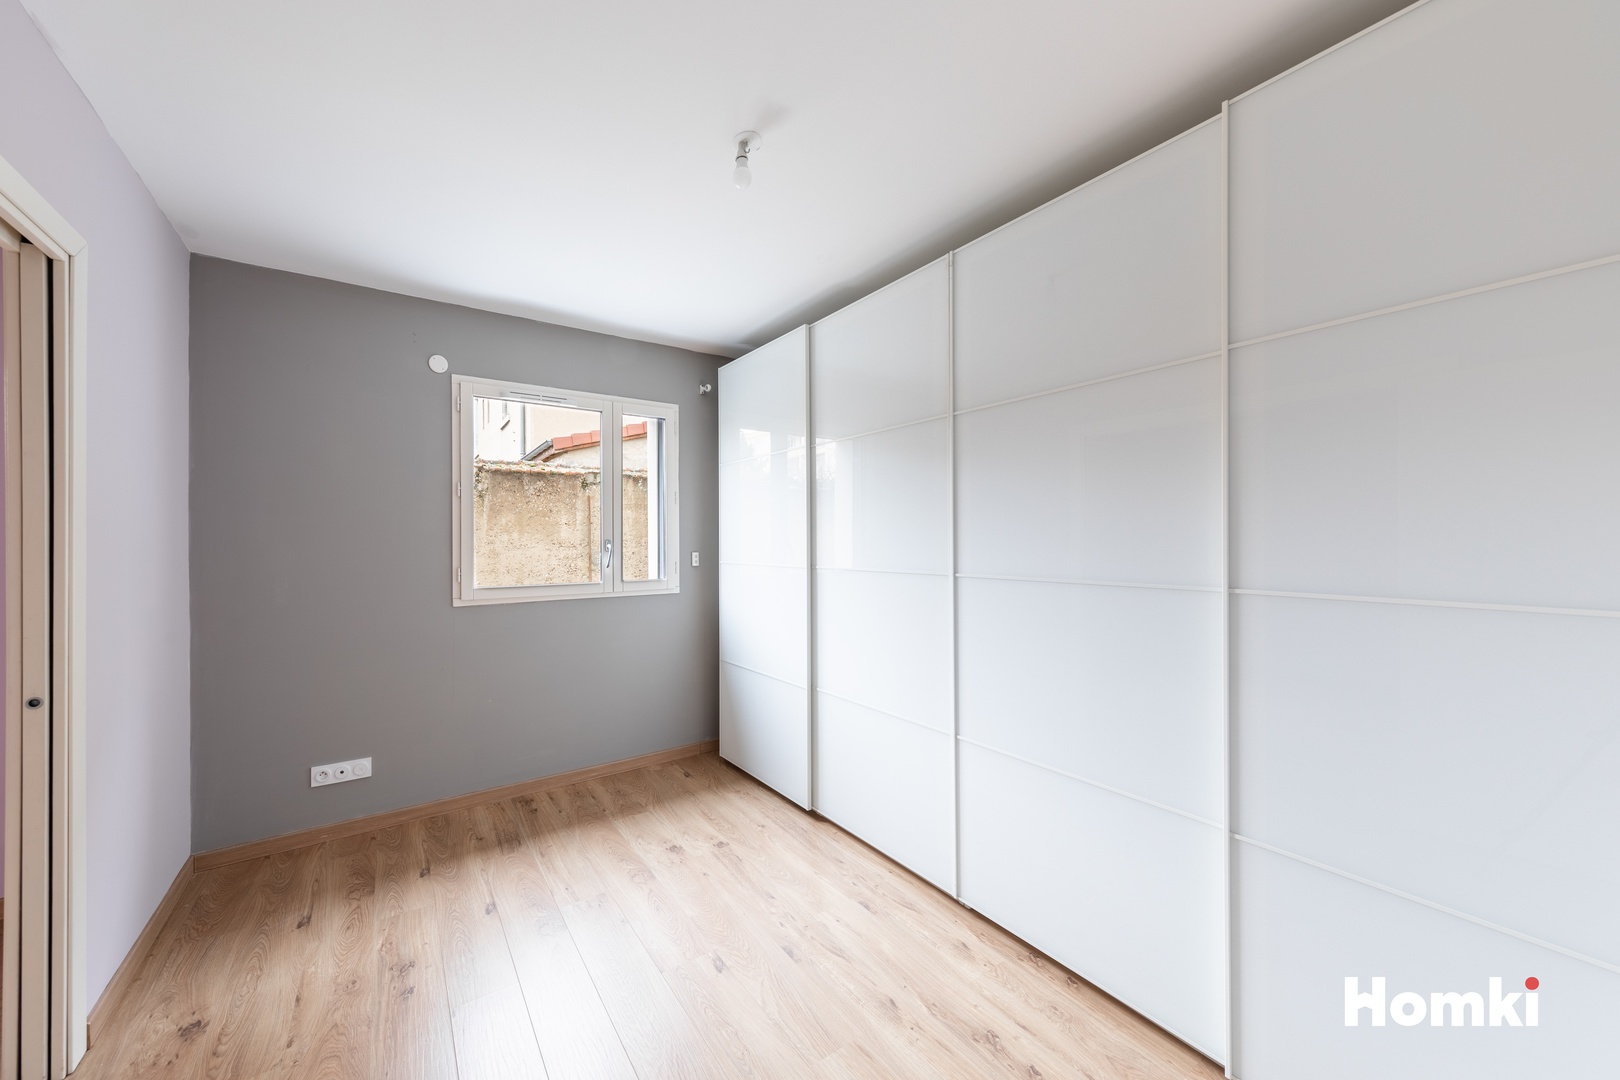 Homki - Vente Appartement  de 85.0 m² à Bourg-en-Bresse 01000